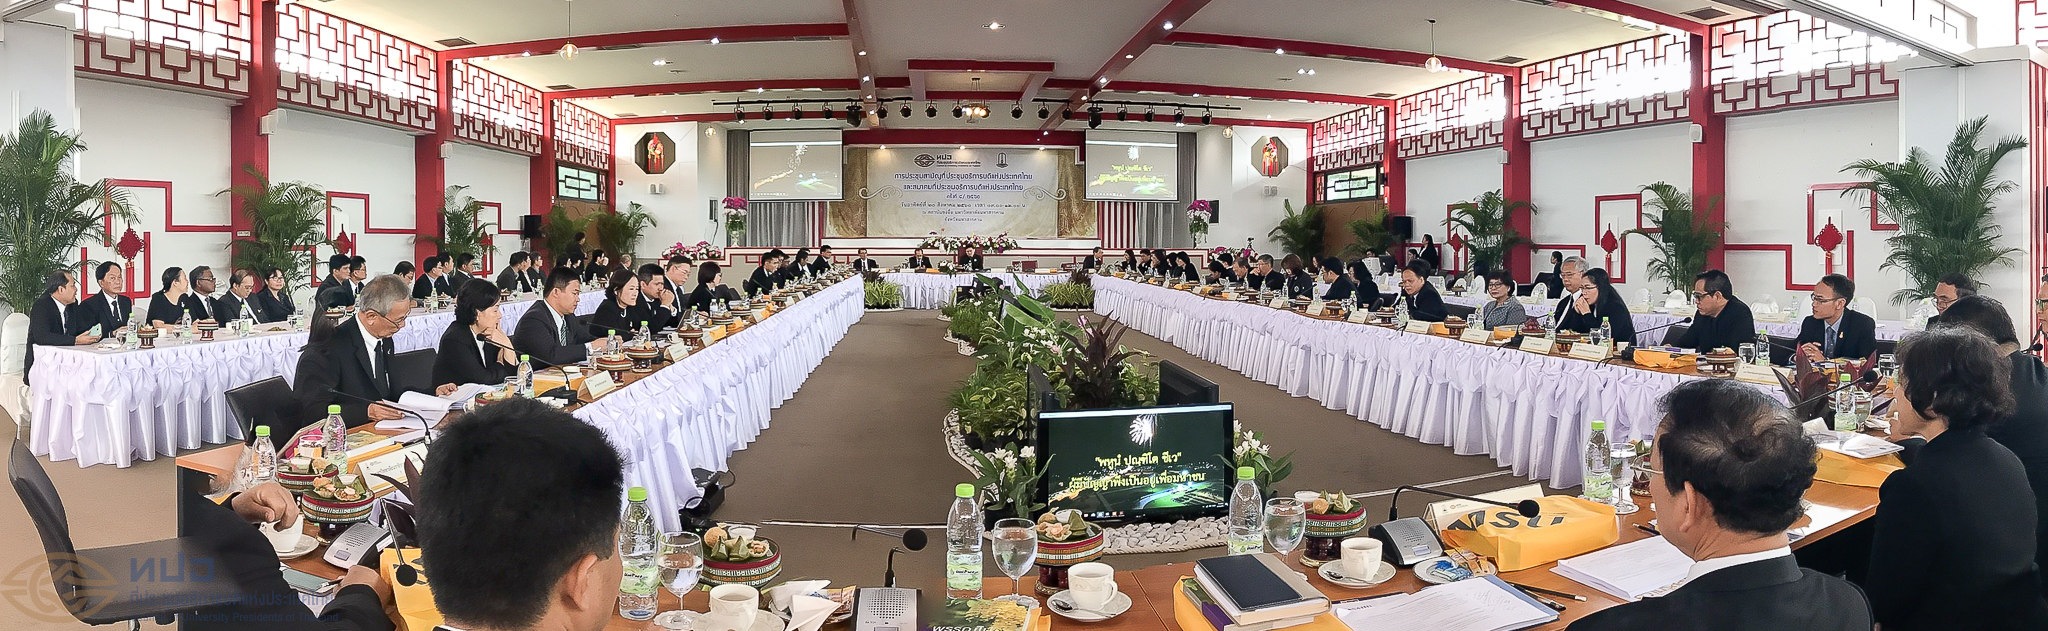 การประชุมสามัญที่ประชุมอธิการบดีแห่งประเทศไทย และ สมาคมที่ประชุมอธิการบดีแห่งประเทศไทย ครั้งที่ 4/2560